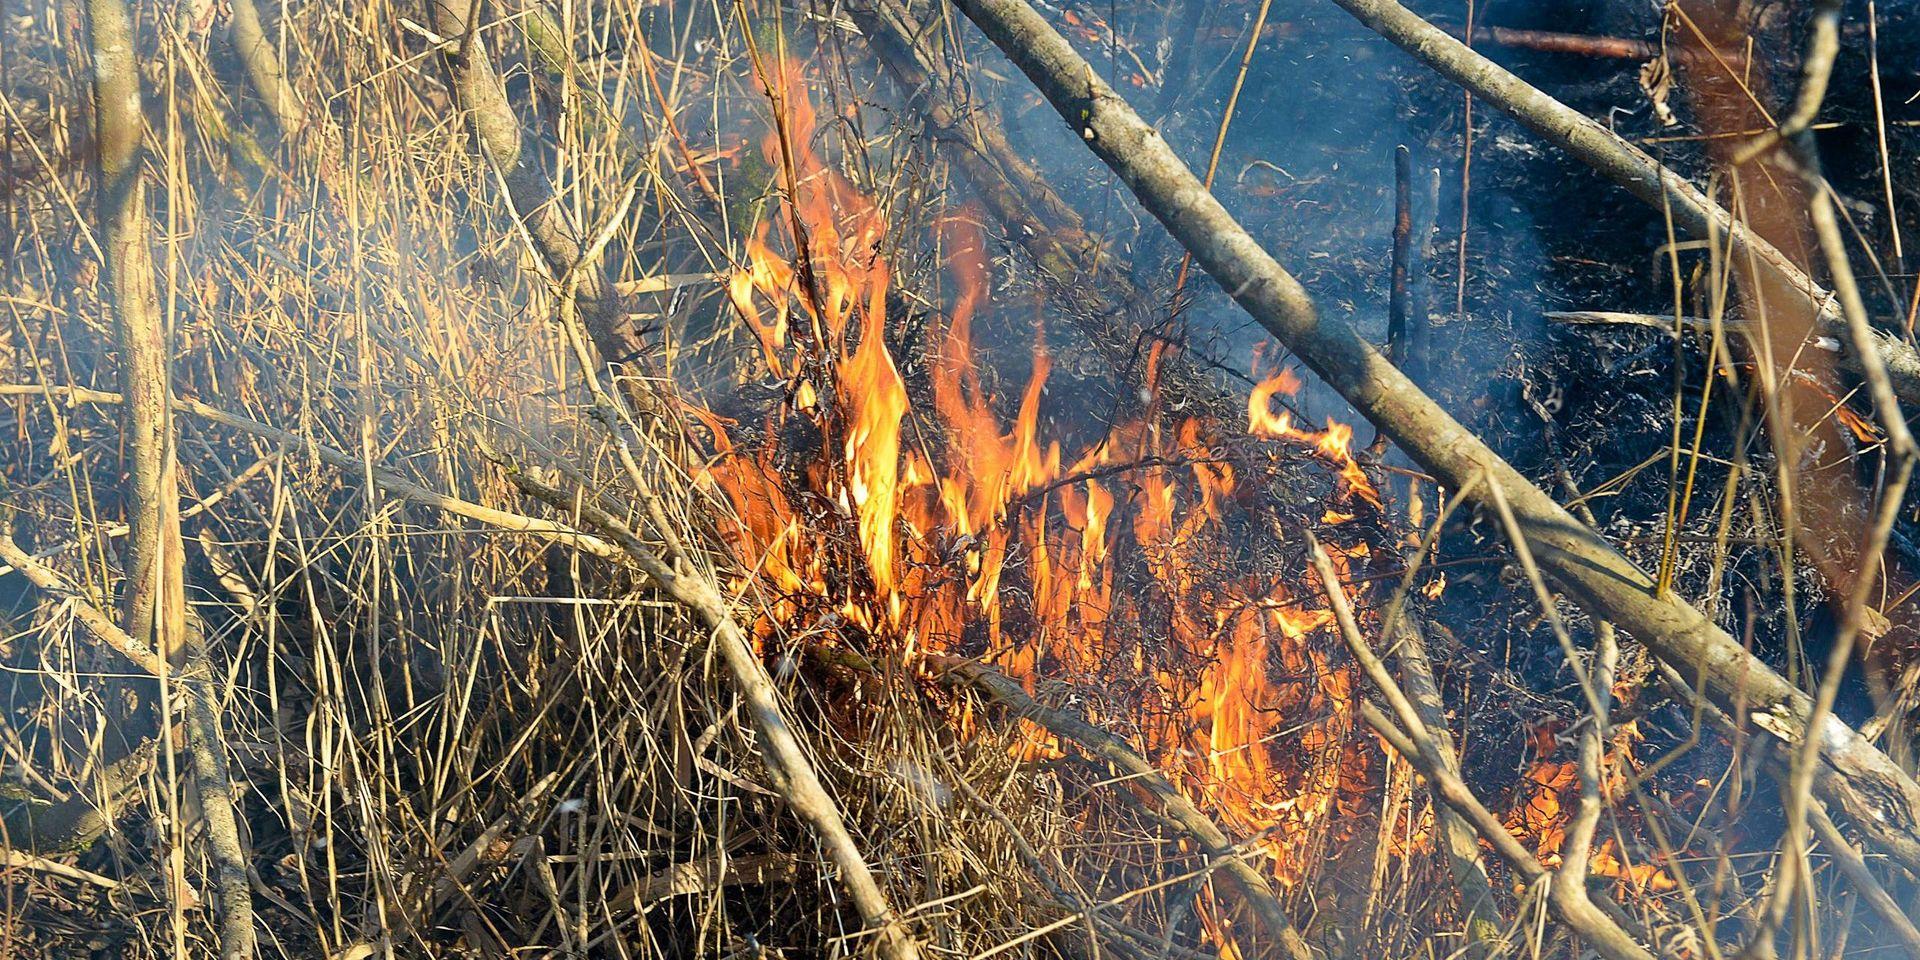 Det är lätt hänt att elden sprider sig när man eldar utomhus och det är torrt i markerna. 